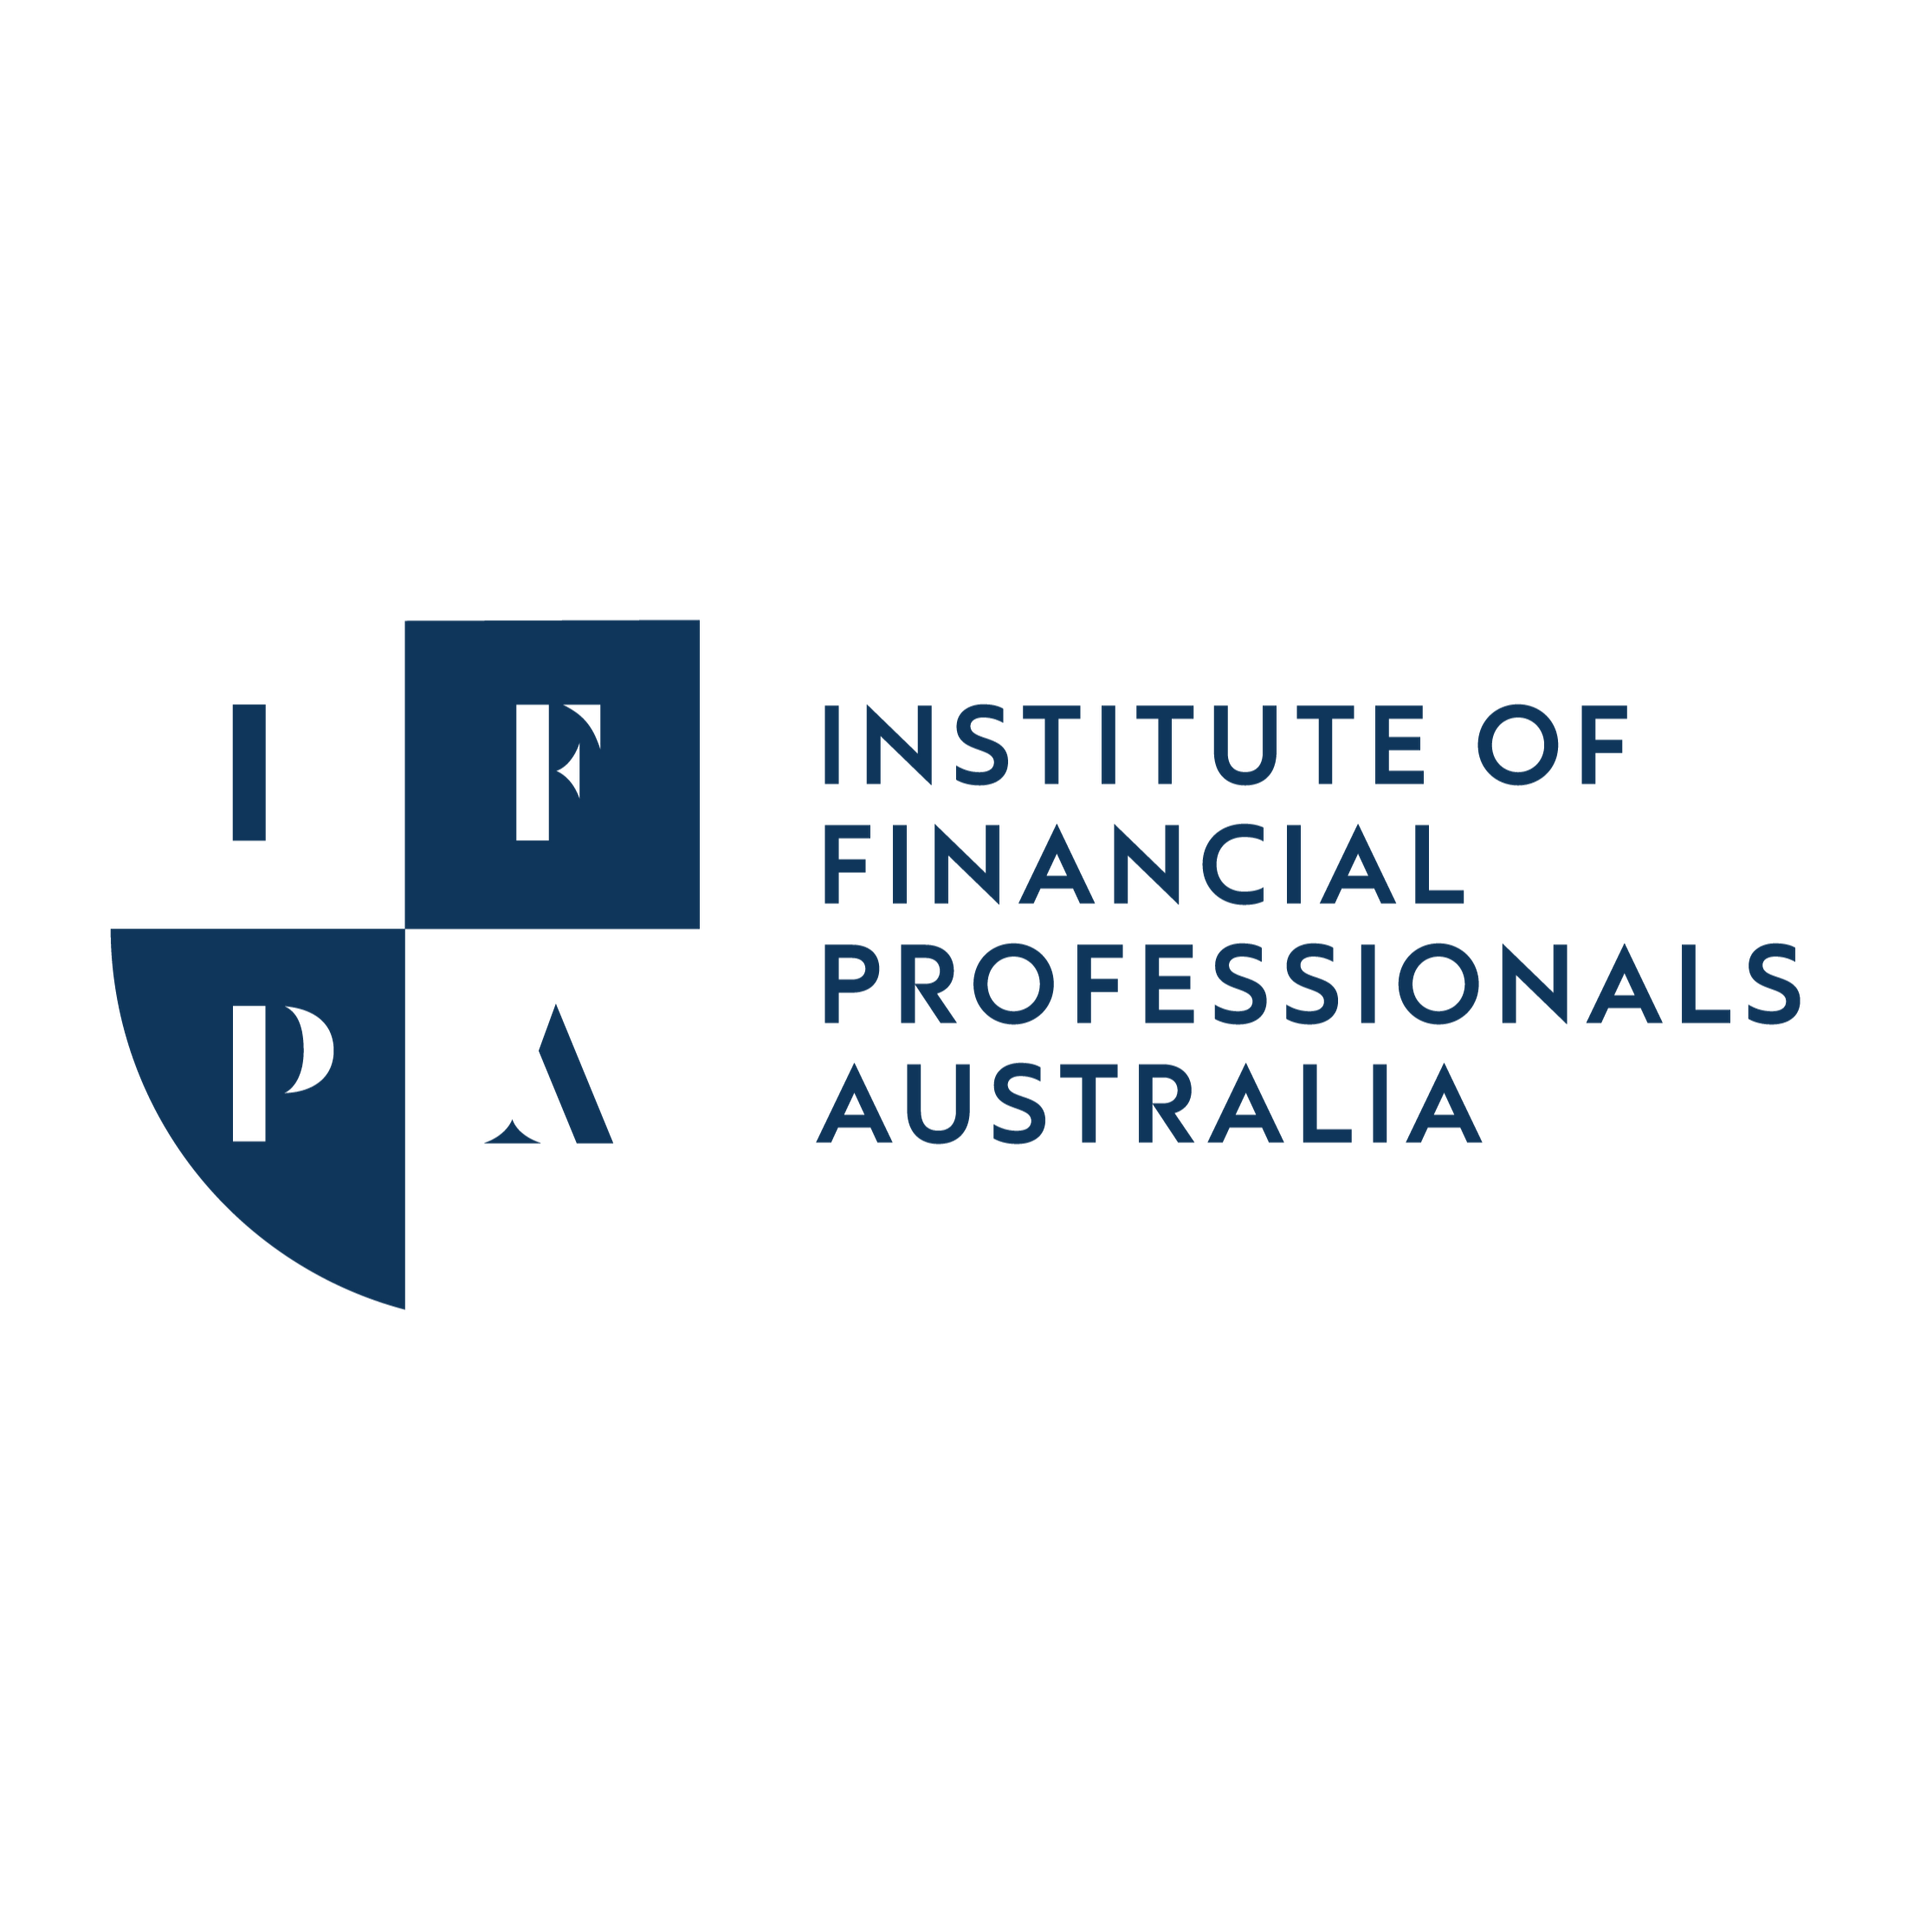 Institute of Financial Professionals Australia